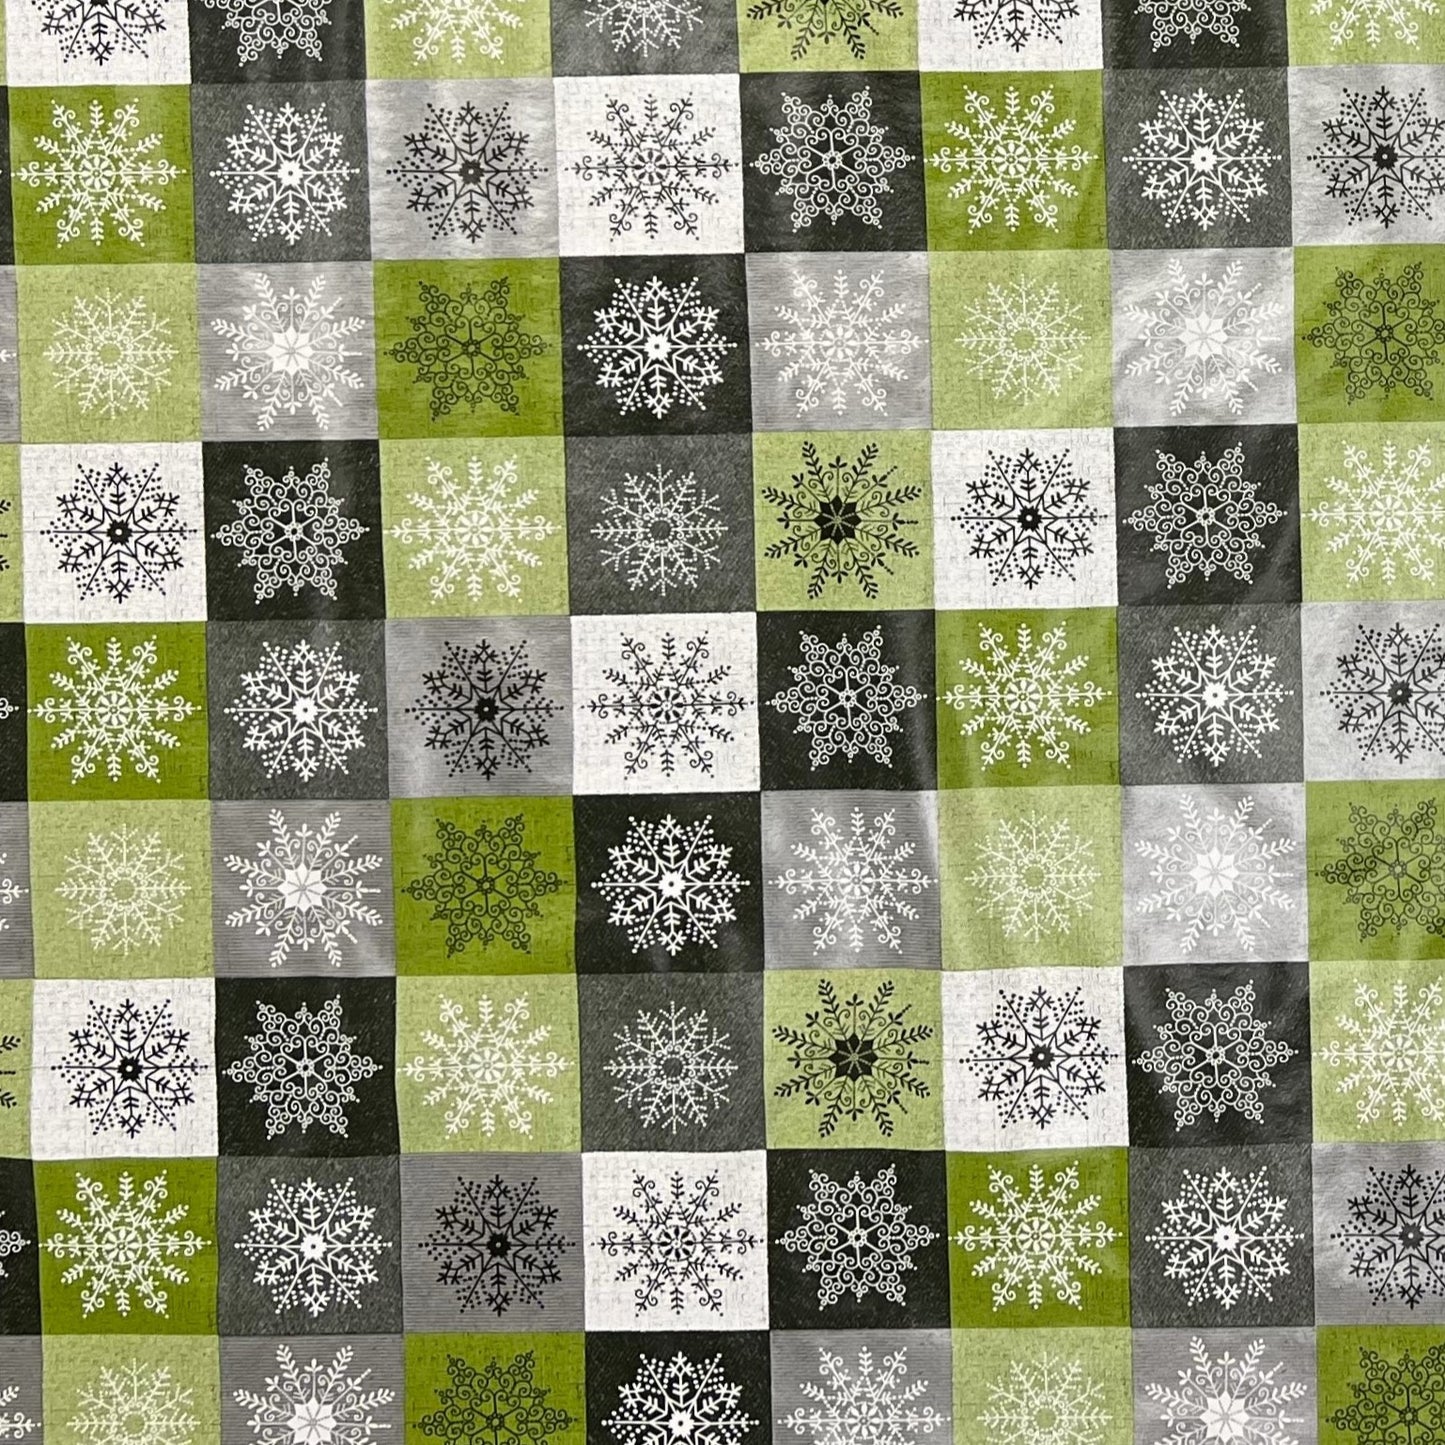 KEVKUS Wachstuch Tischdecke Weihnachten 01355-04 Schneeflocken Karo grün grau silber eckig rund oval